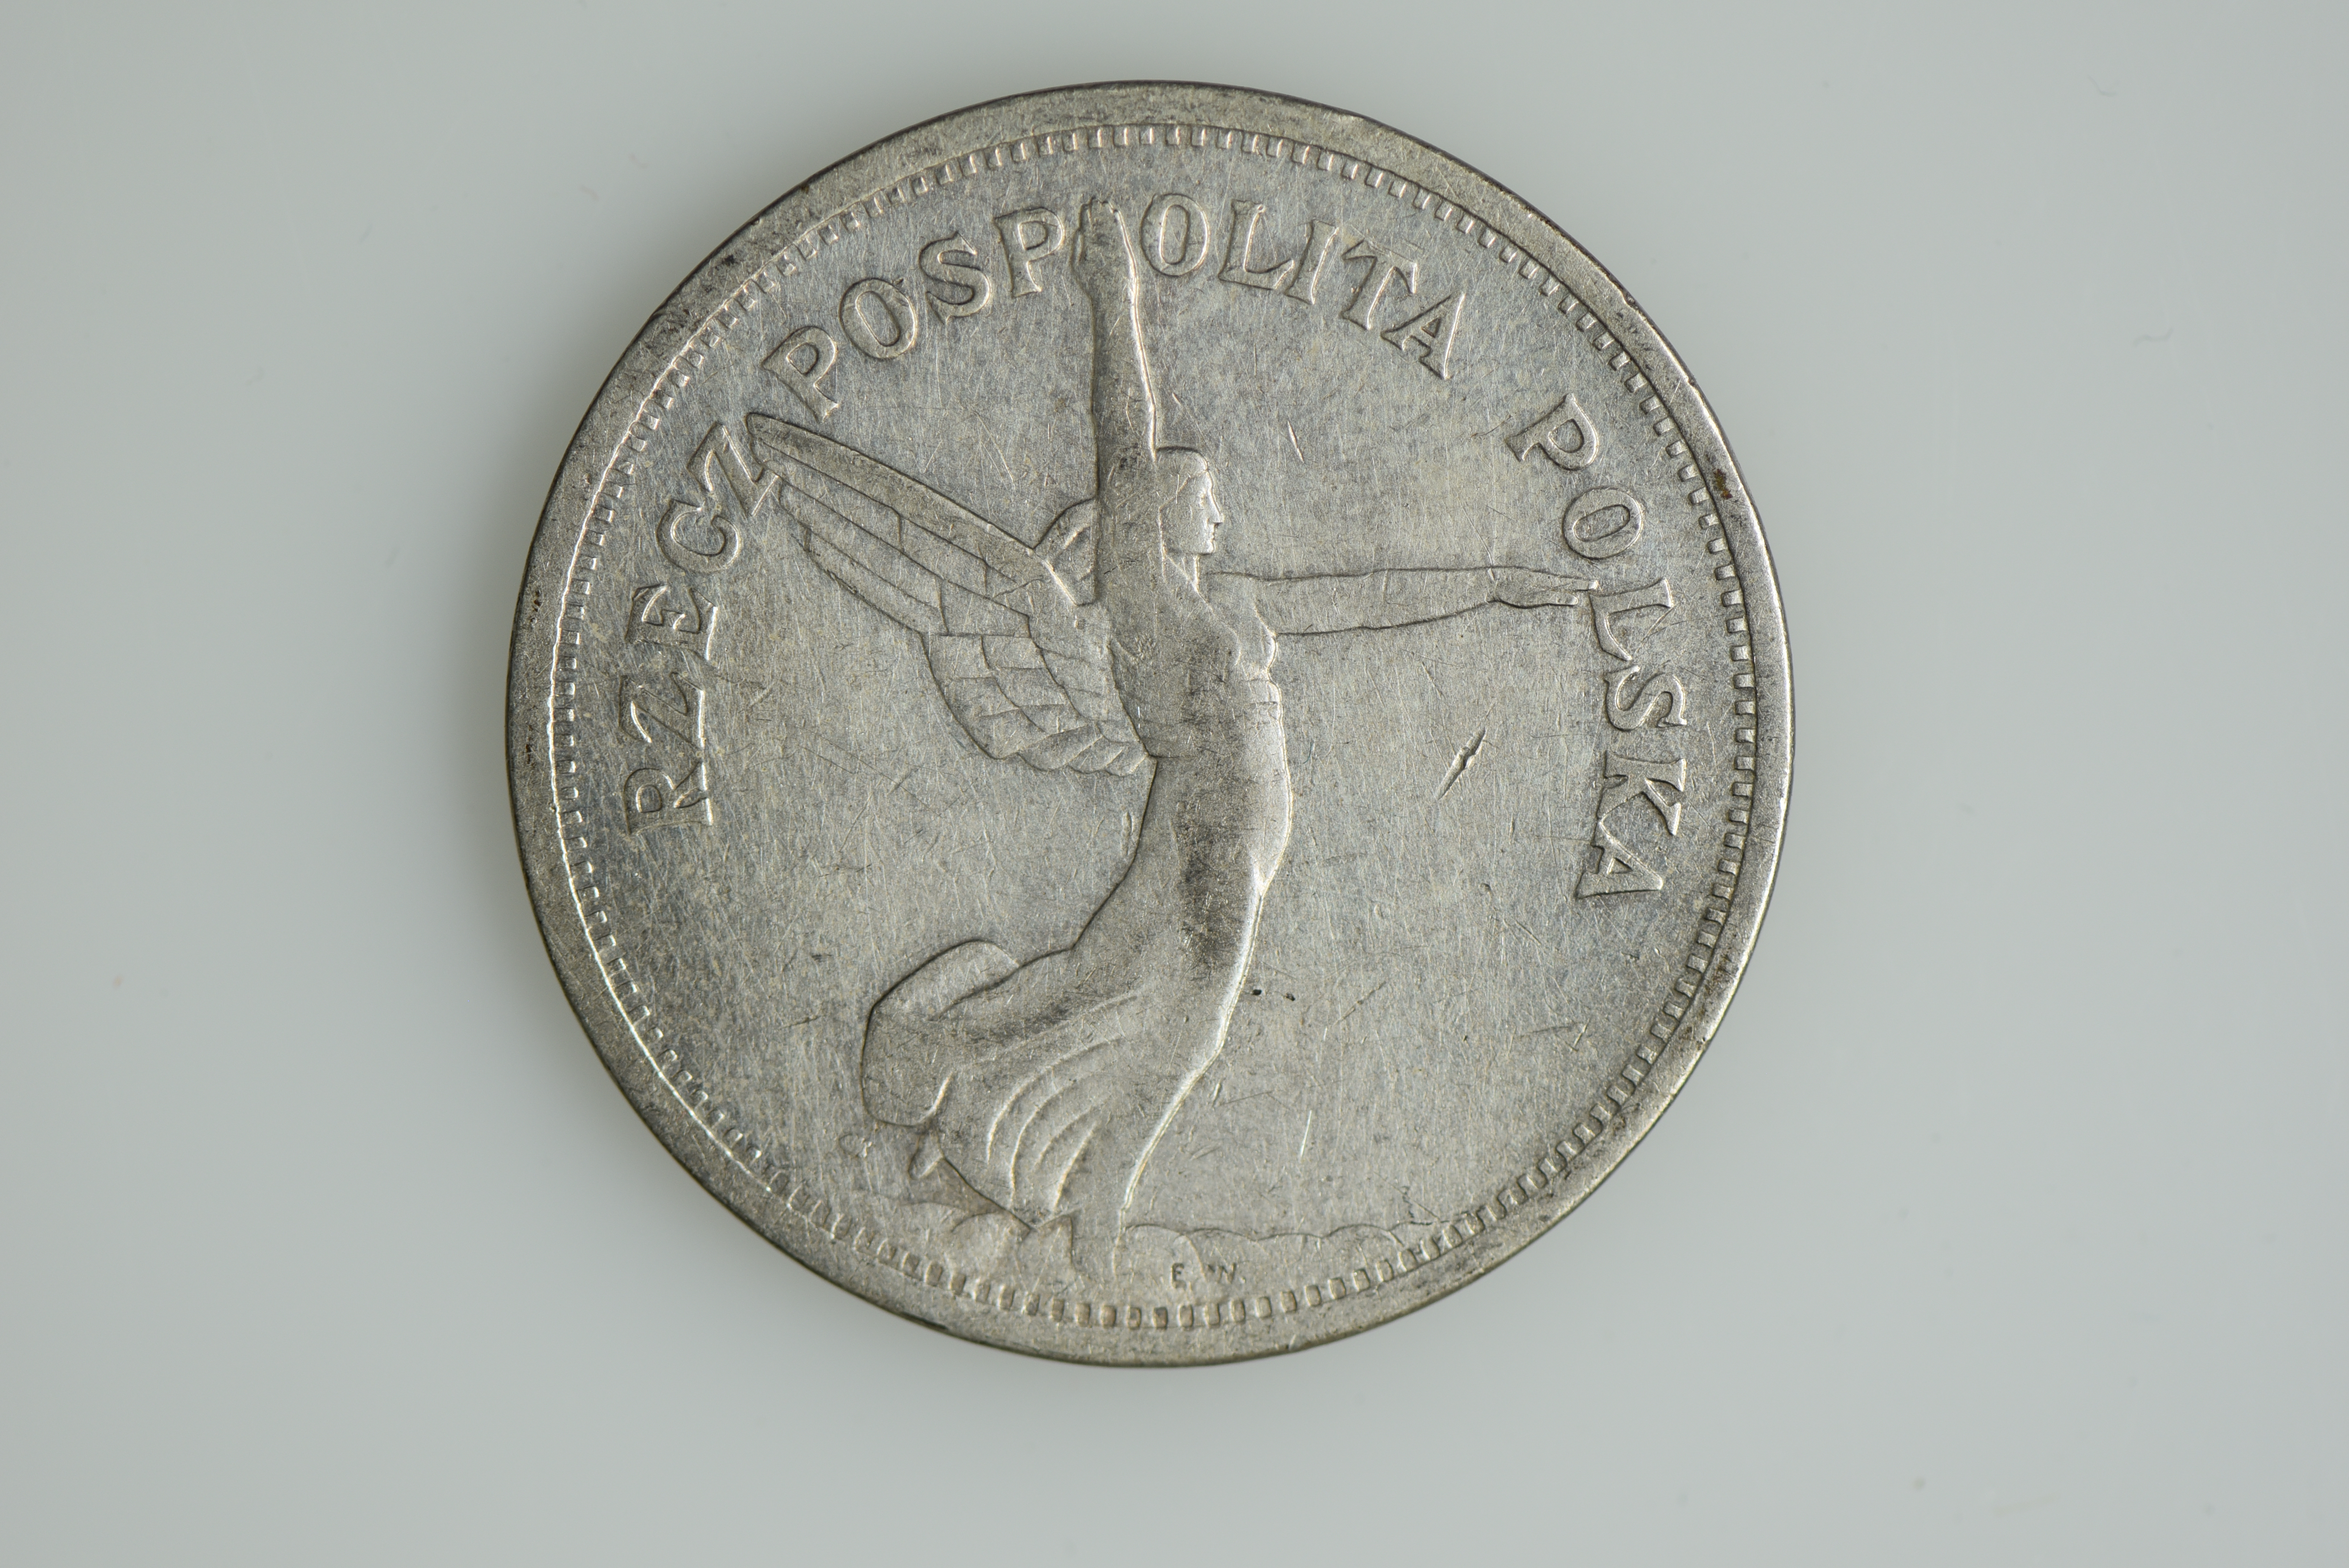 Moneta o nominale 5 złotych, tzw. Nike, 1928 r. – rewers